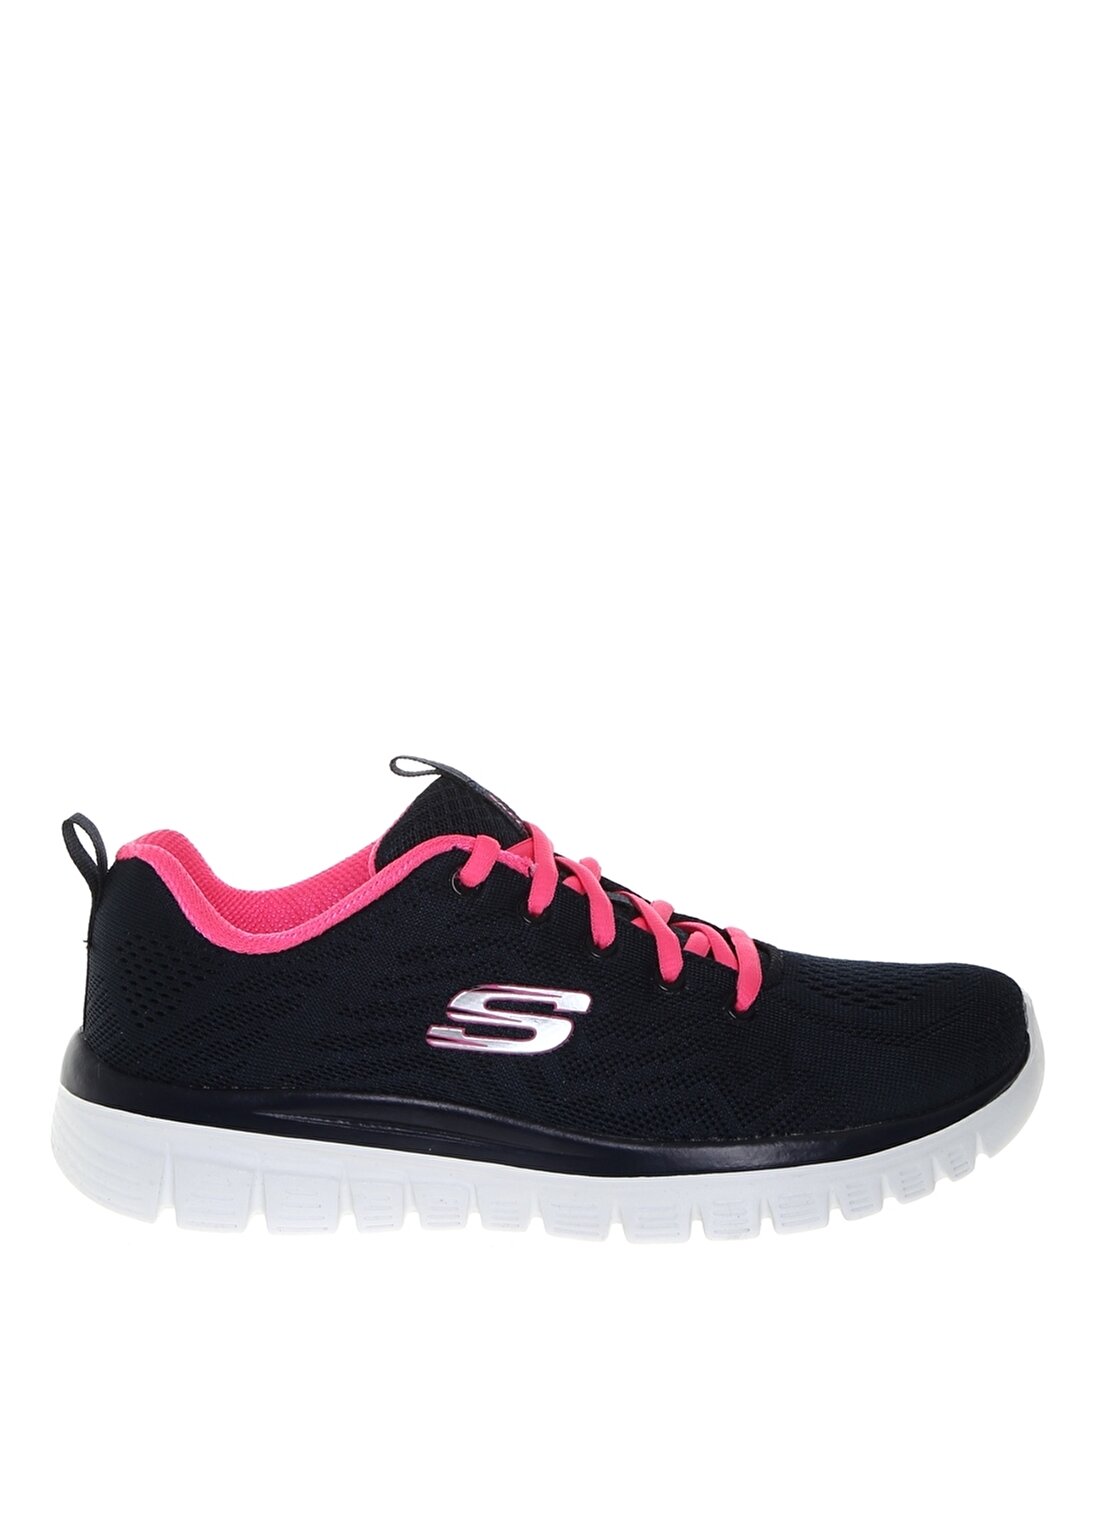 Skechers Graceful Yürüyüş Ayakkabısı